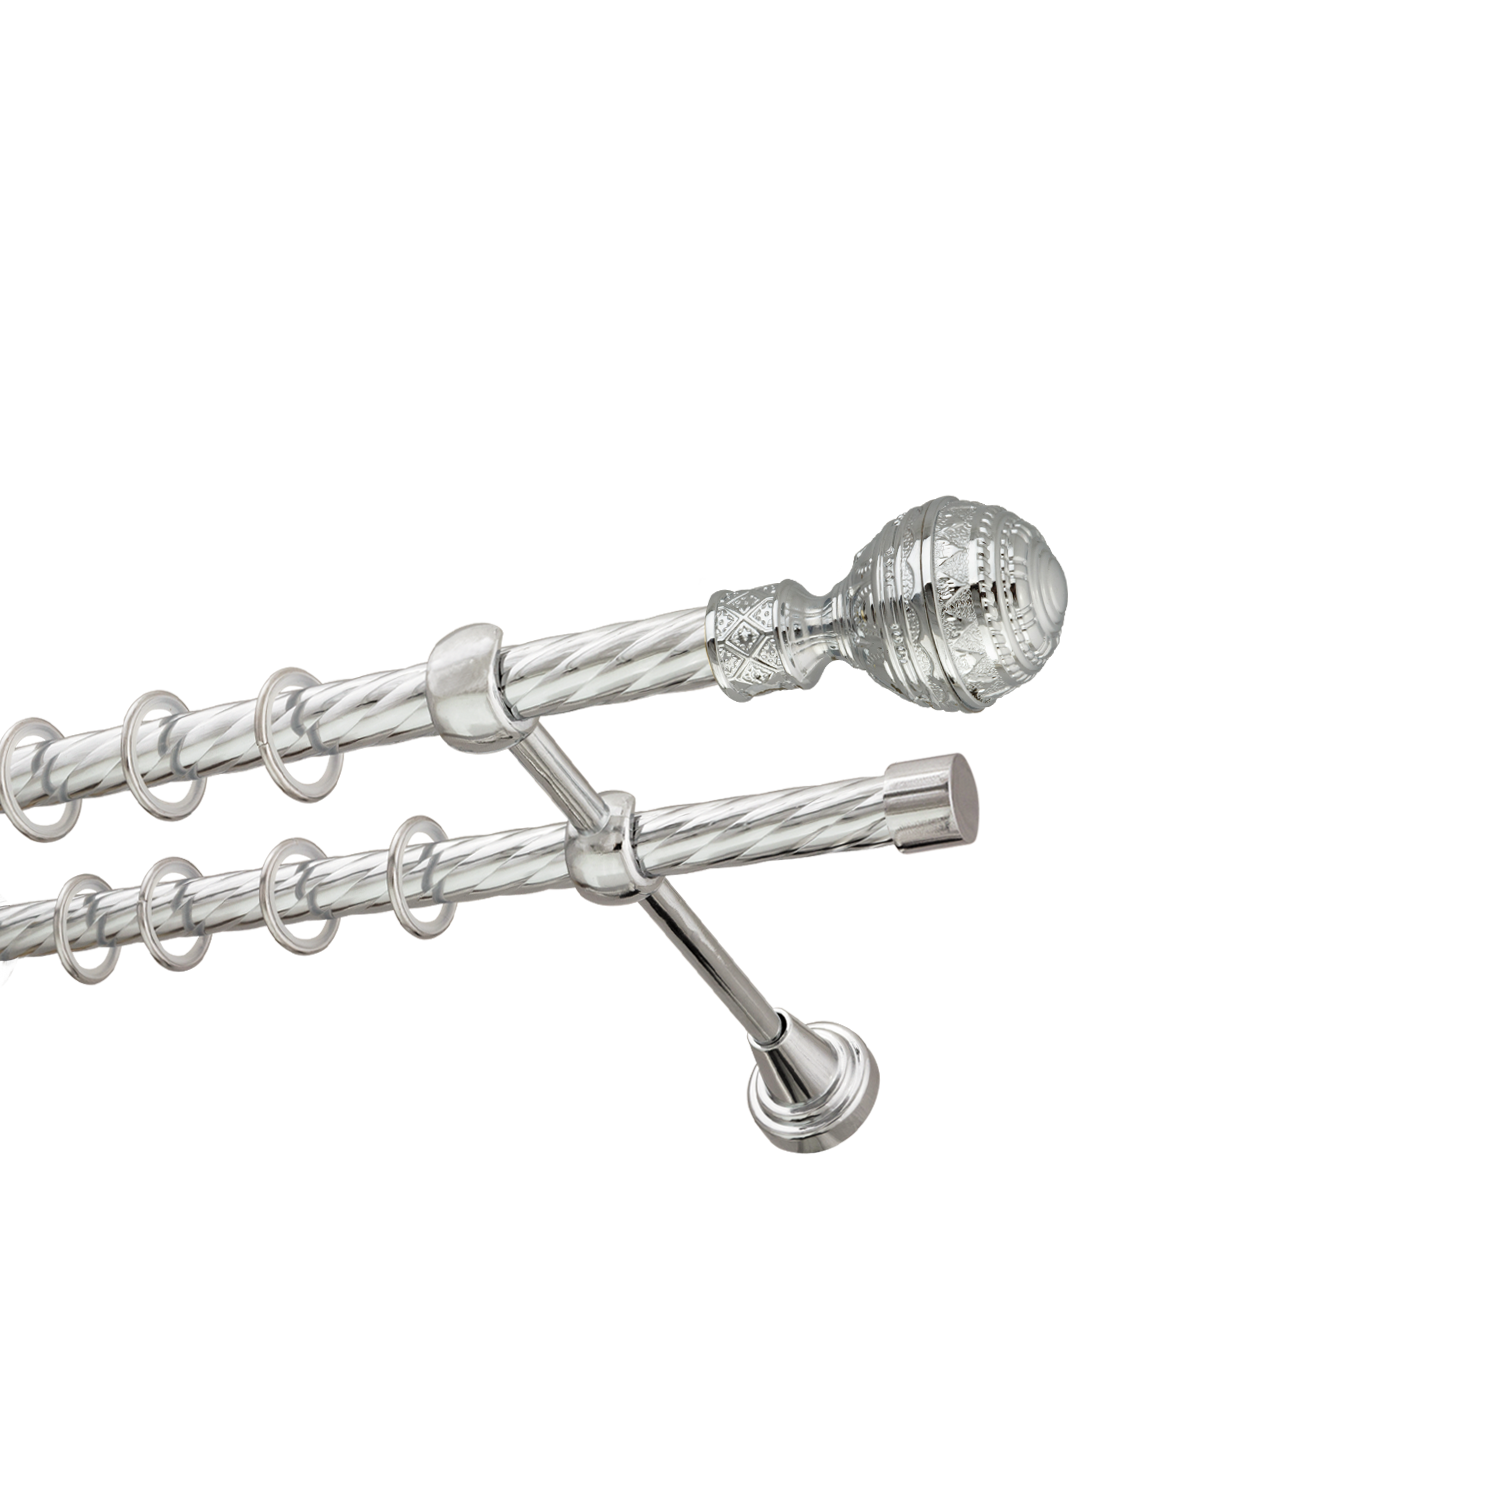 Металлический карниз для штор Роял, двухрядный 16/16 мм, серебро, витая штанга, длина 200 см